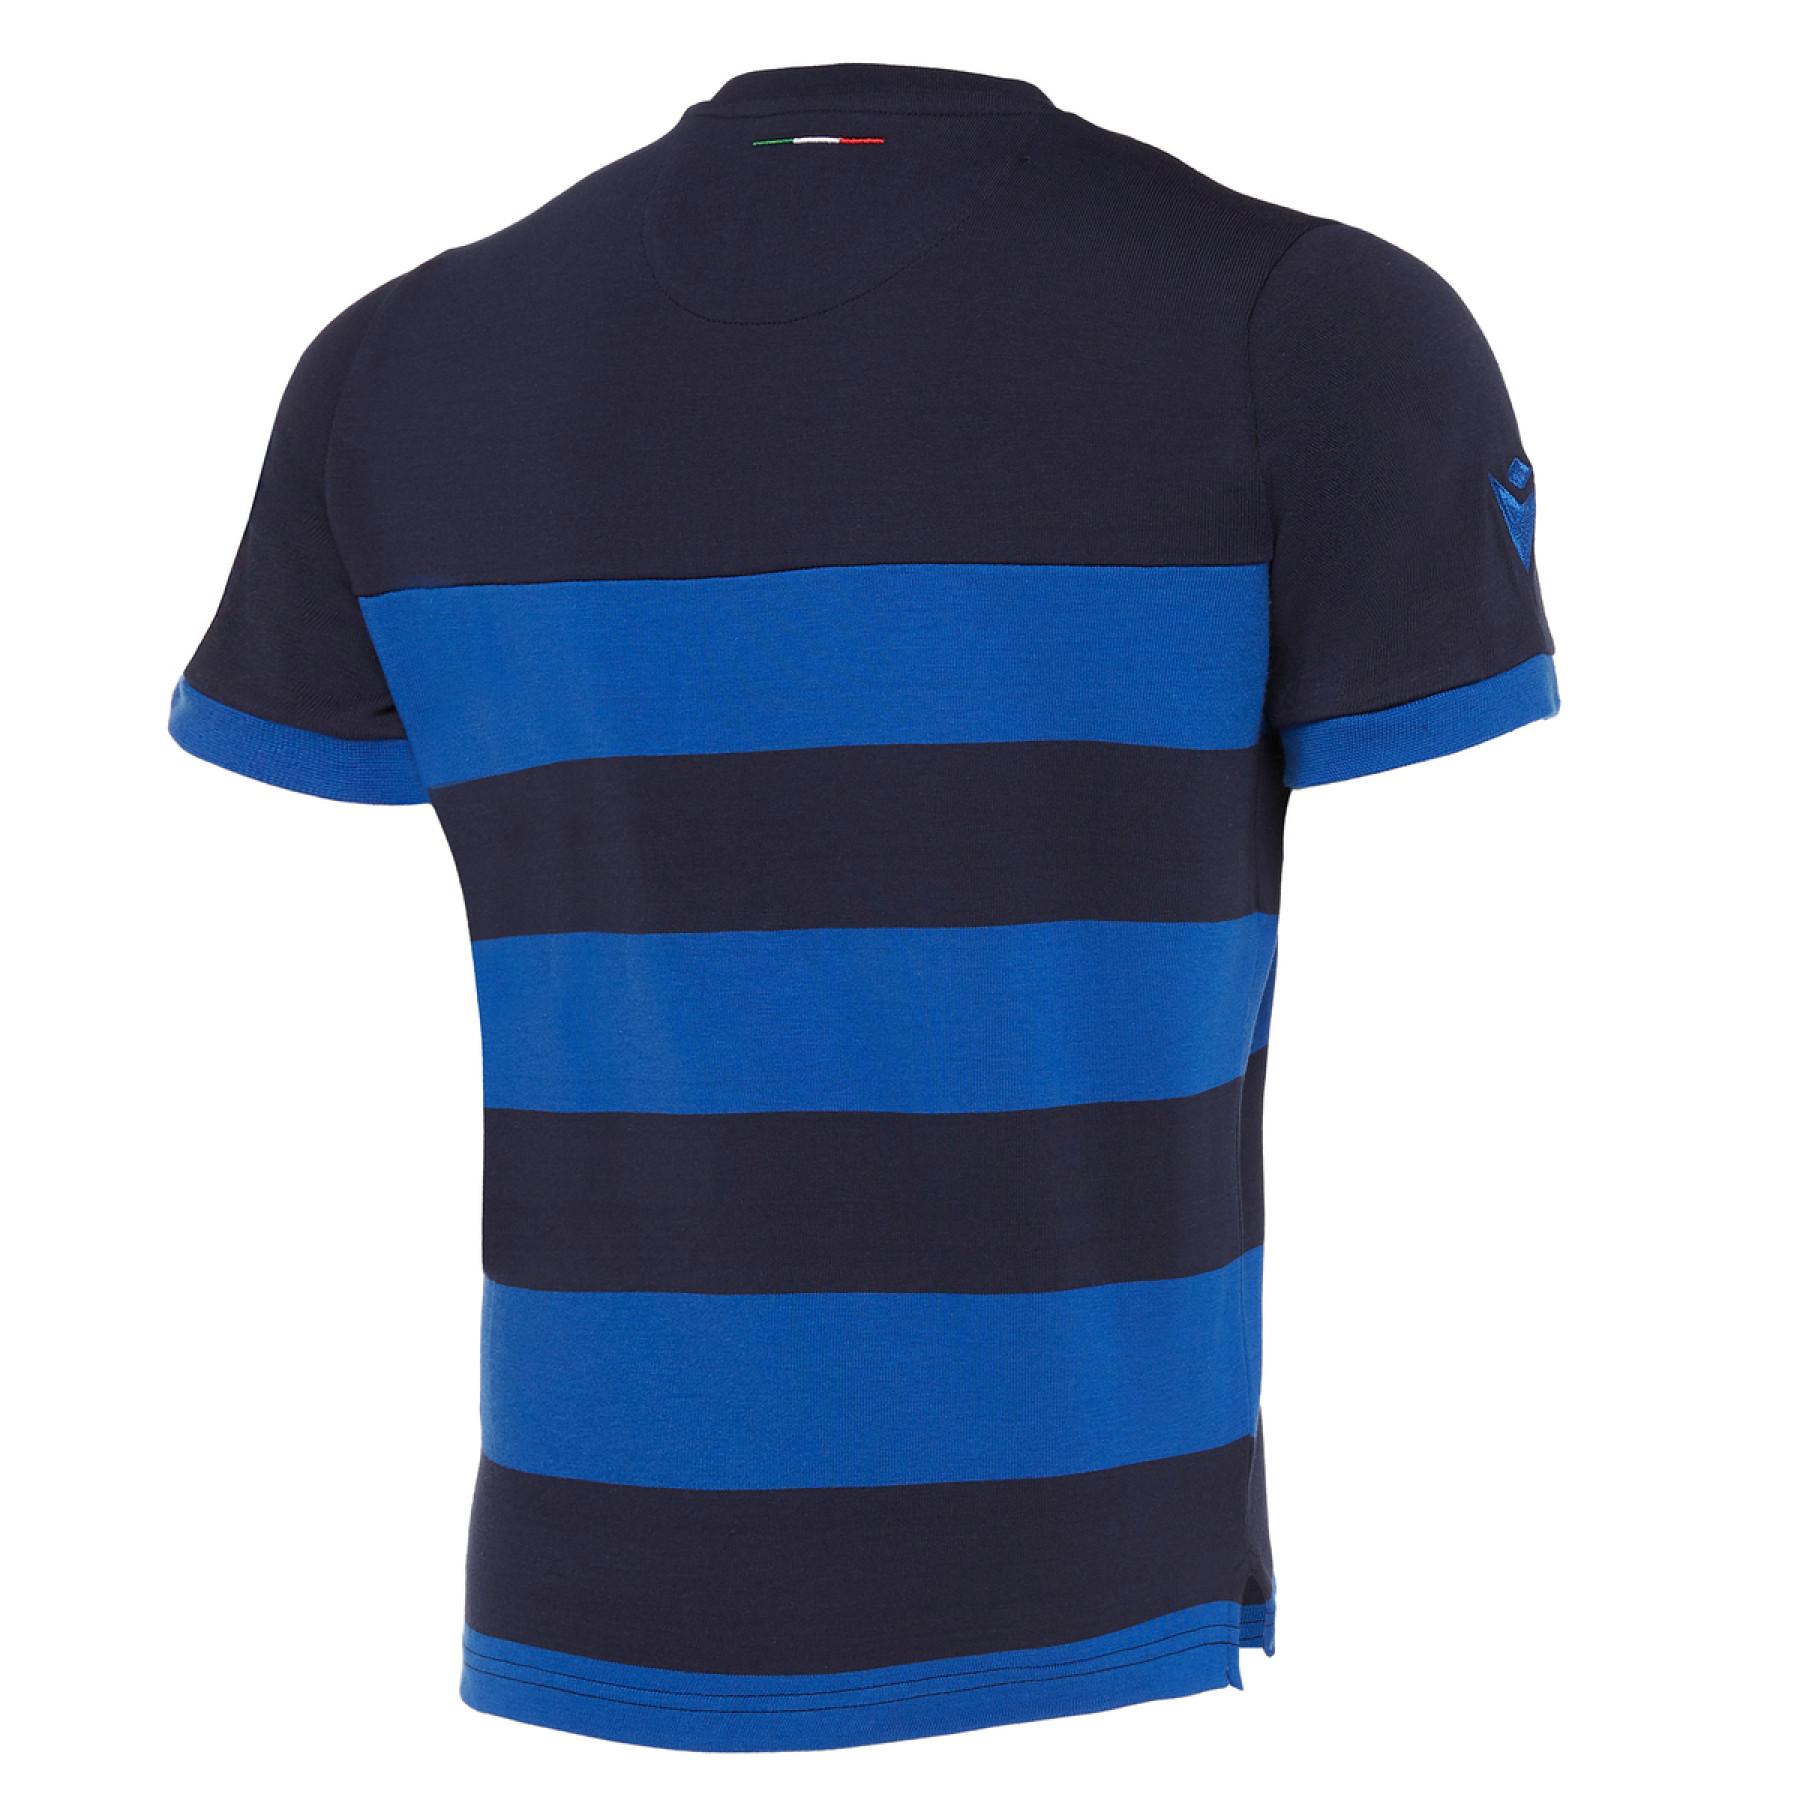 Kinder-T-Shirt aus Baumwolle Italien rugby 2019